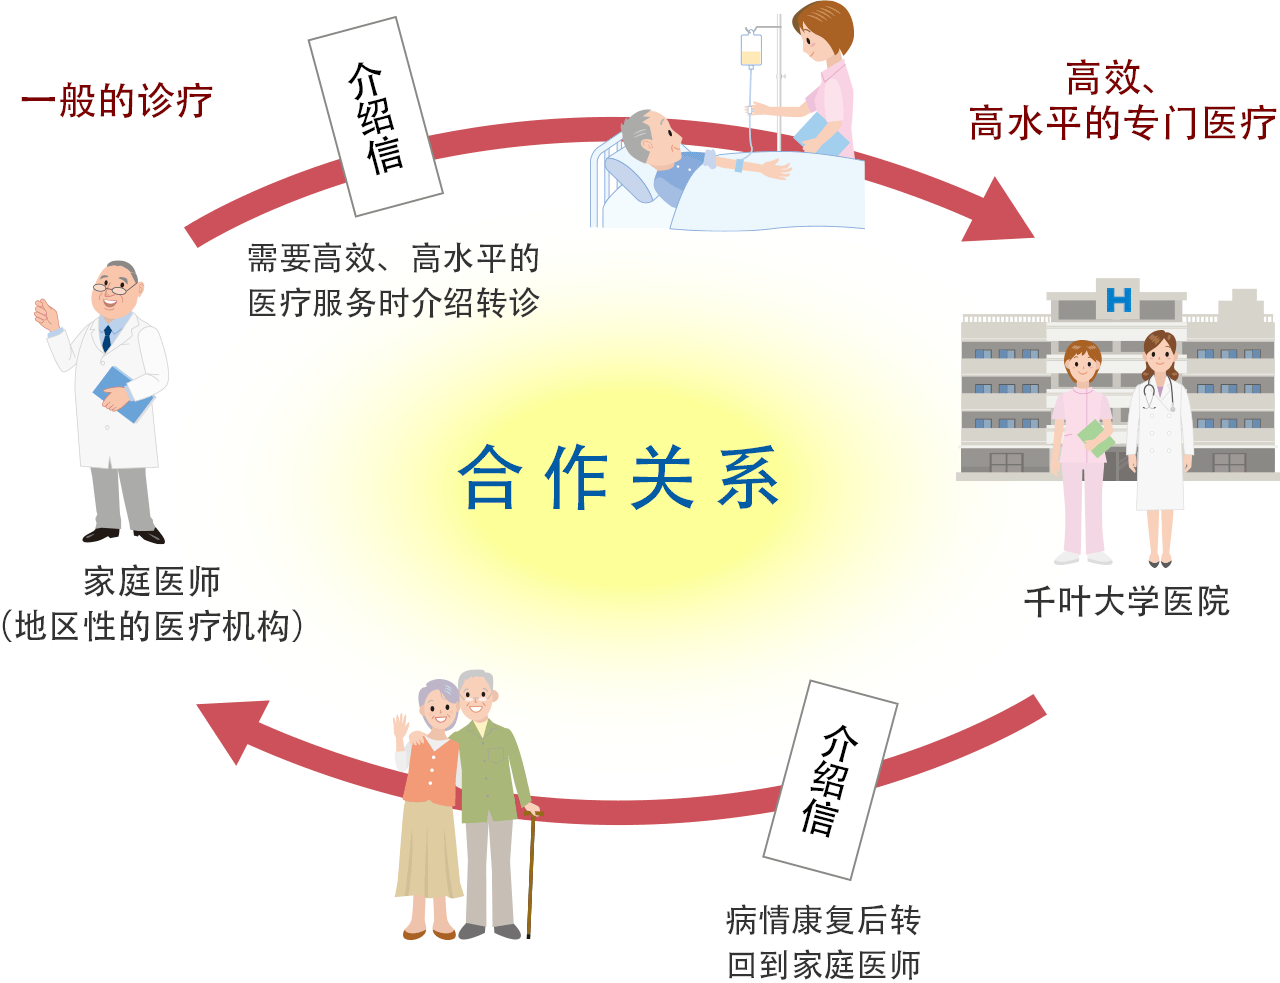 「家庭医师（地区性医疗机构）」与千叶大学医院之间的合作关系